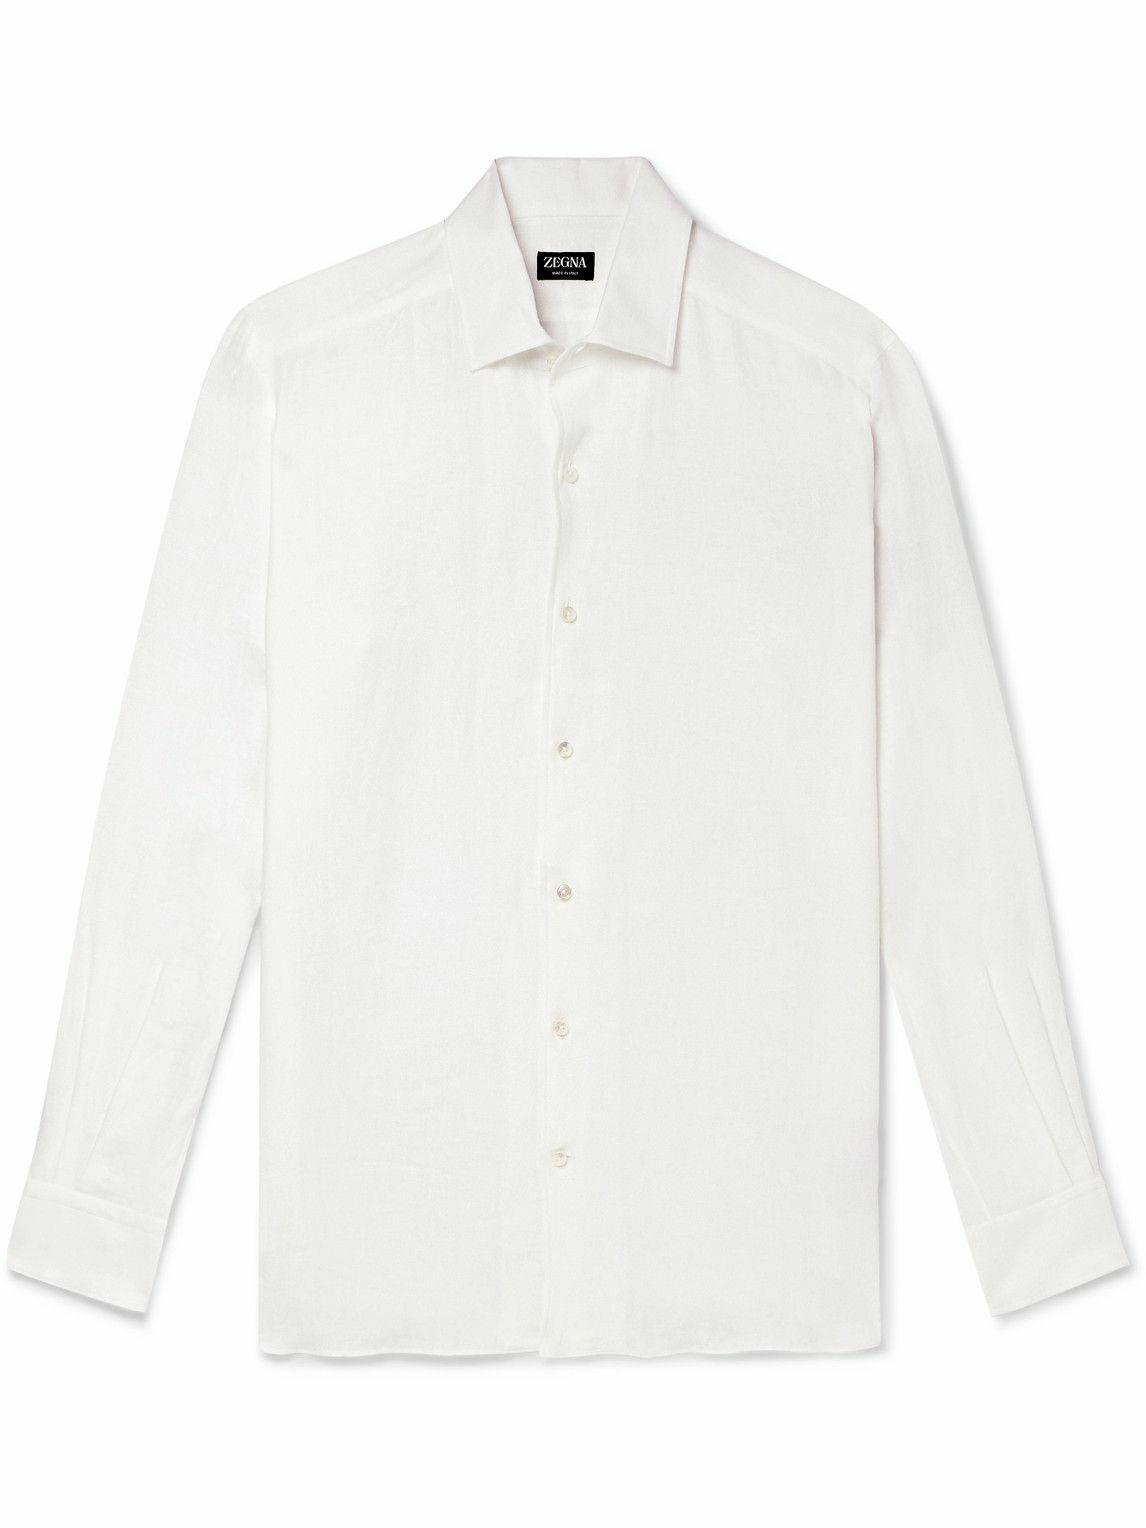 Zegna - Linen Shirt - White Zegna